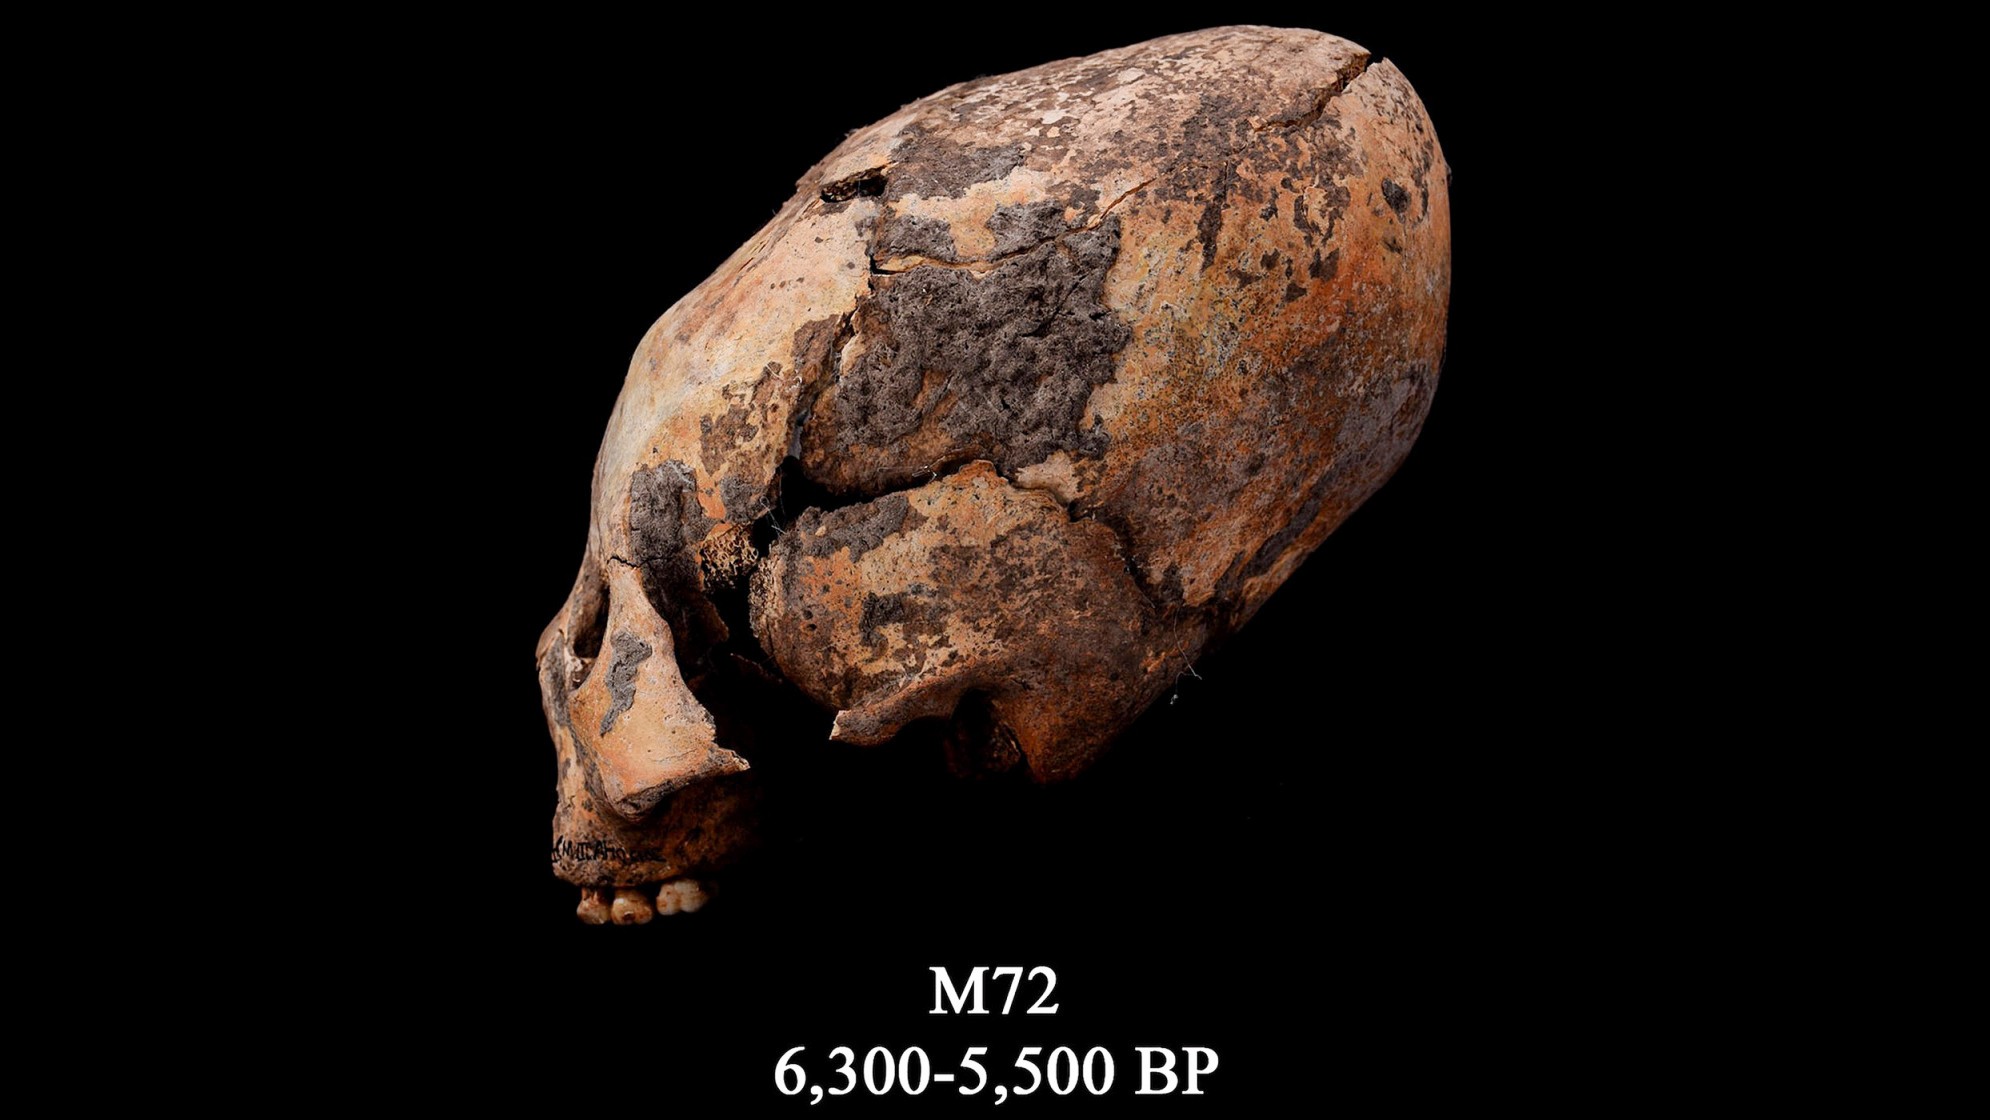 Kaukolė žinoma kaip M72. Ši pertvarkyta žmogaus kaukolė buvo rasta šiaurės rytų Kinijoje ir buvo sąmoningai modifikuota